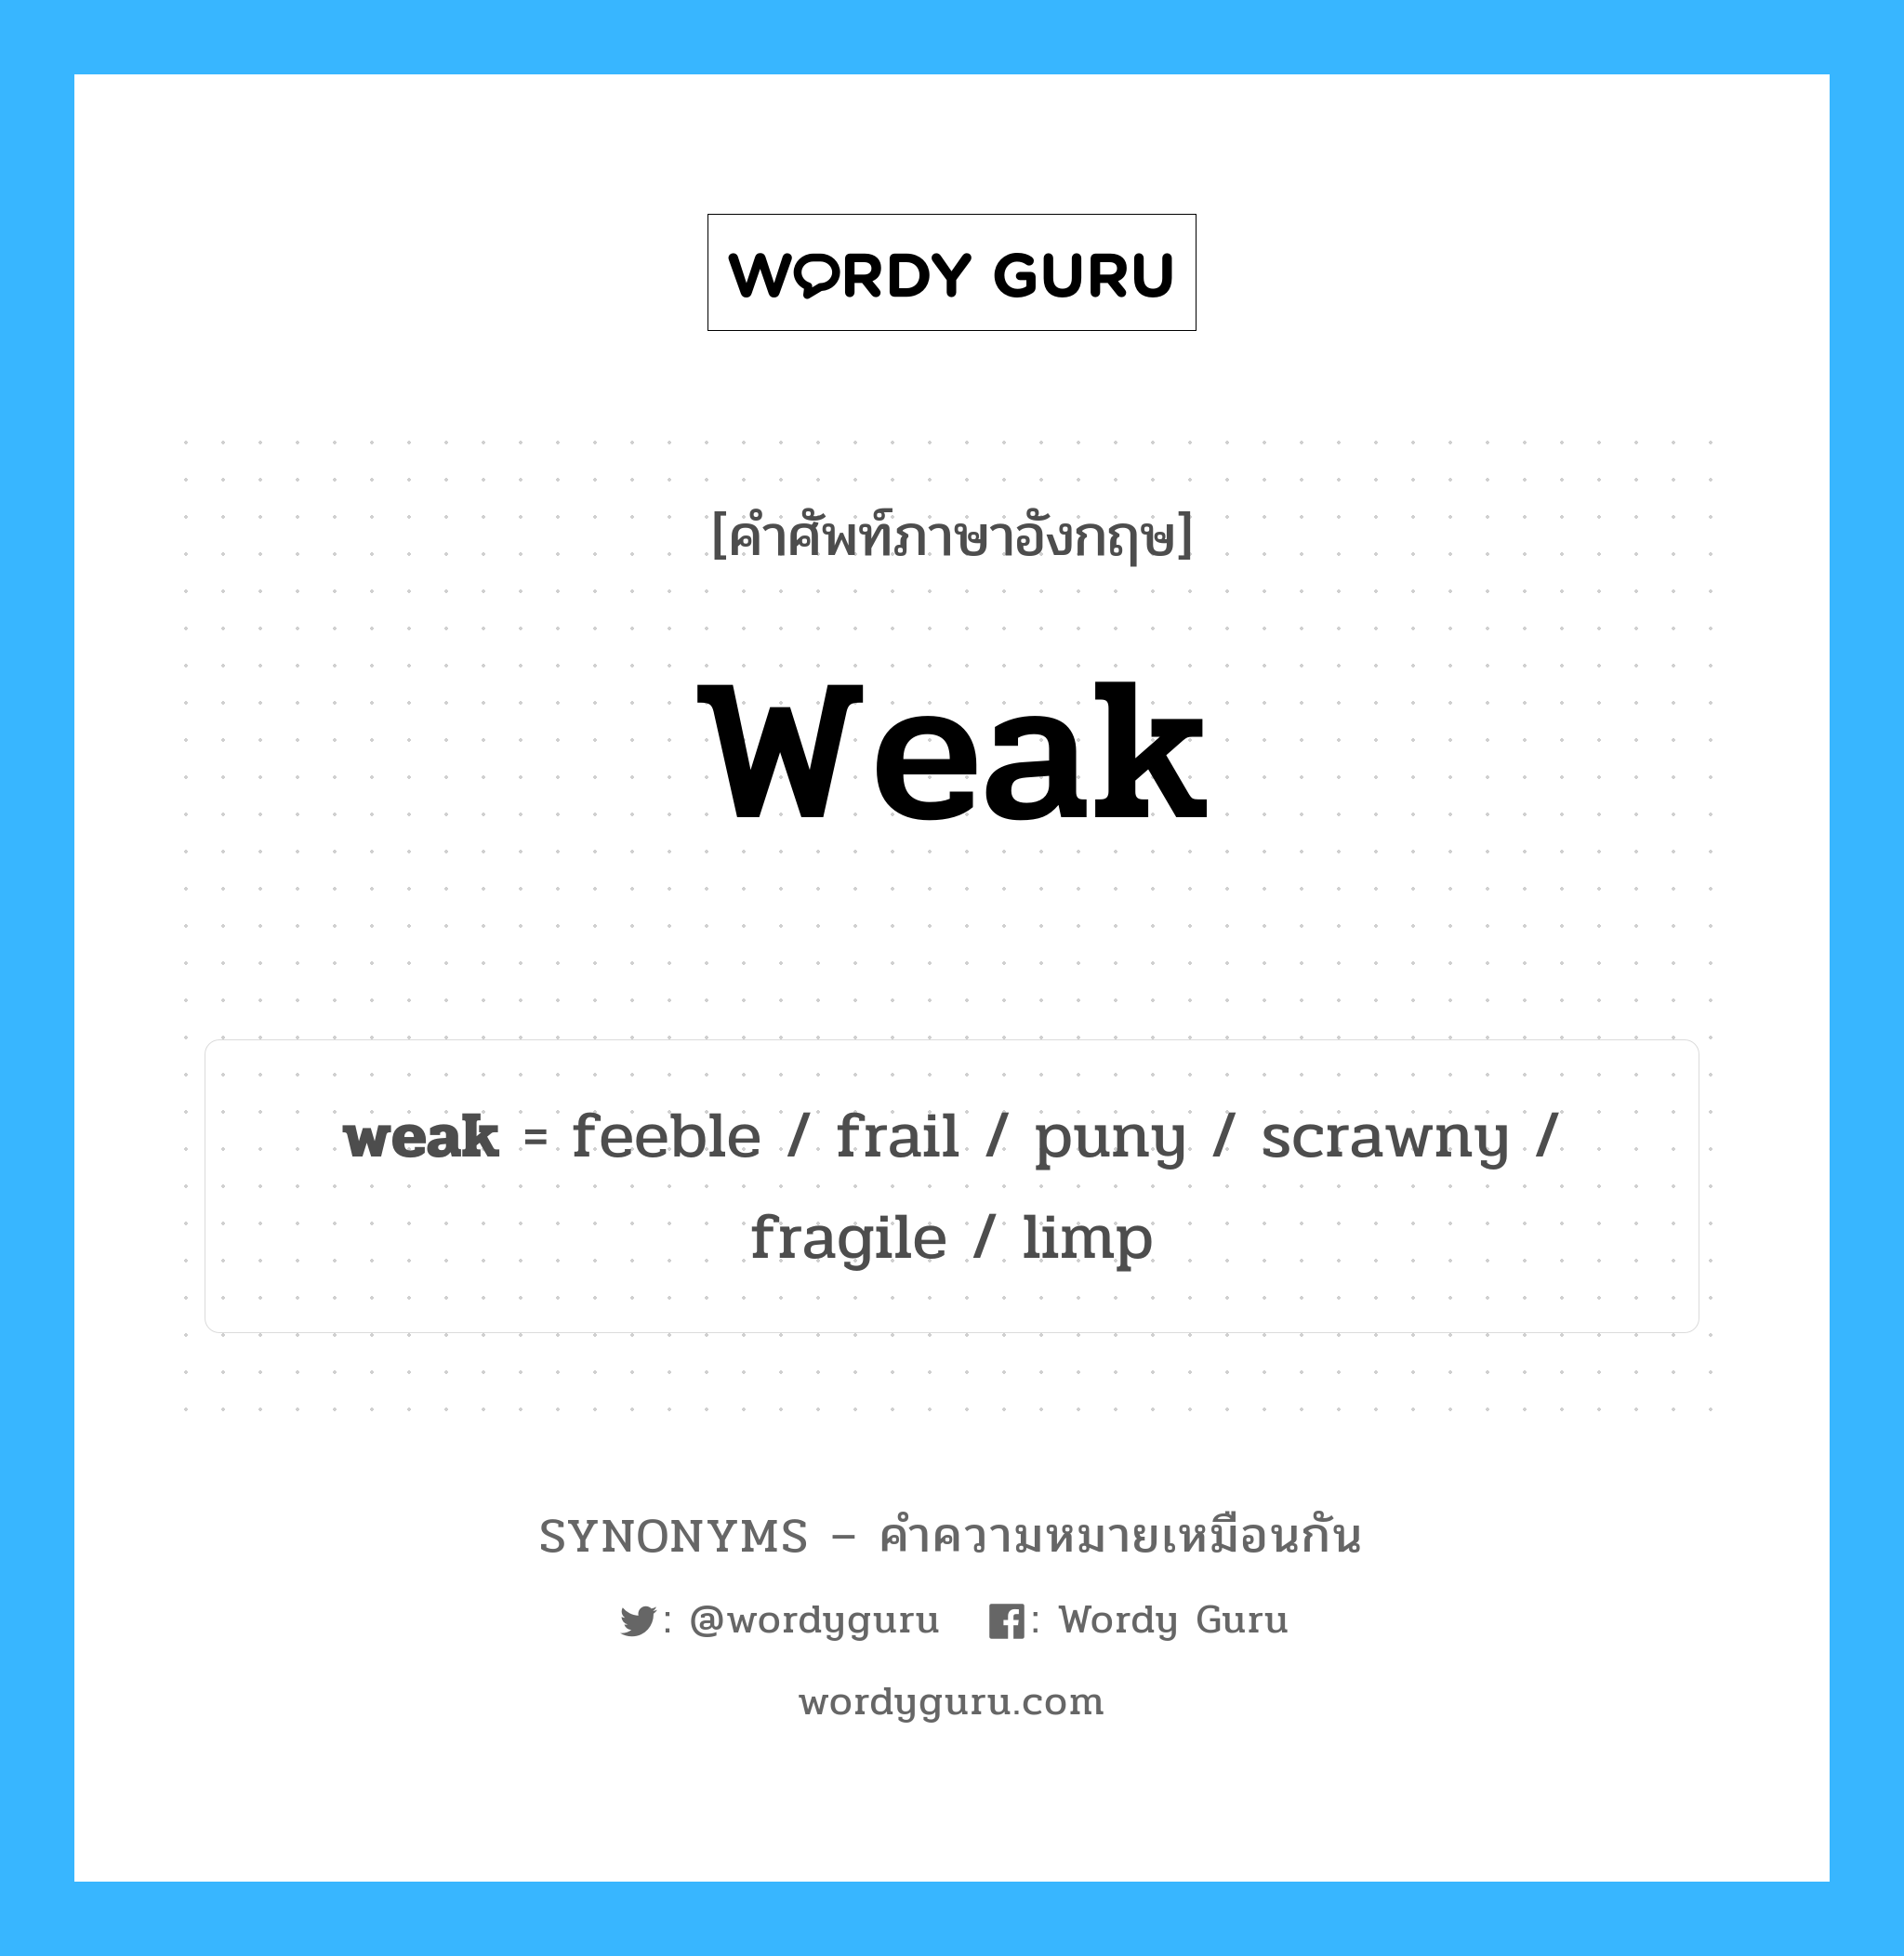 weak เป็นหนึ่งใน fragile และมีคำอื่น ๆ อีกดังนี้, คำศัพท์ภาษาอังกฤษ weak ความหมายคล้ายกันกับ fragile แปลว่า เปราะบาง หมวด fragile